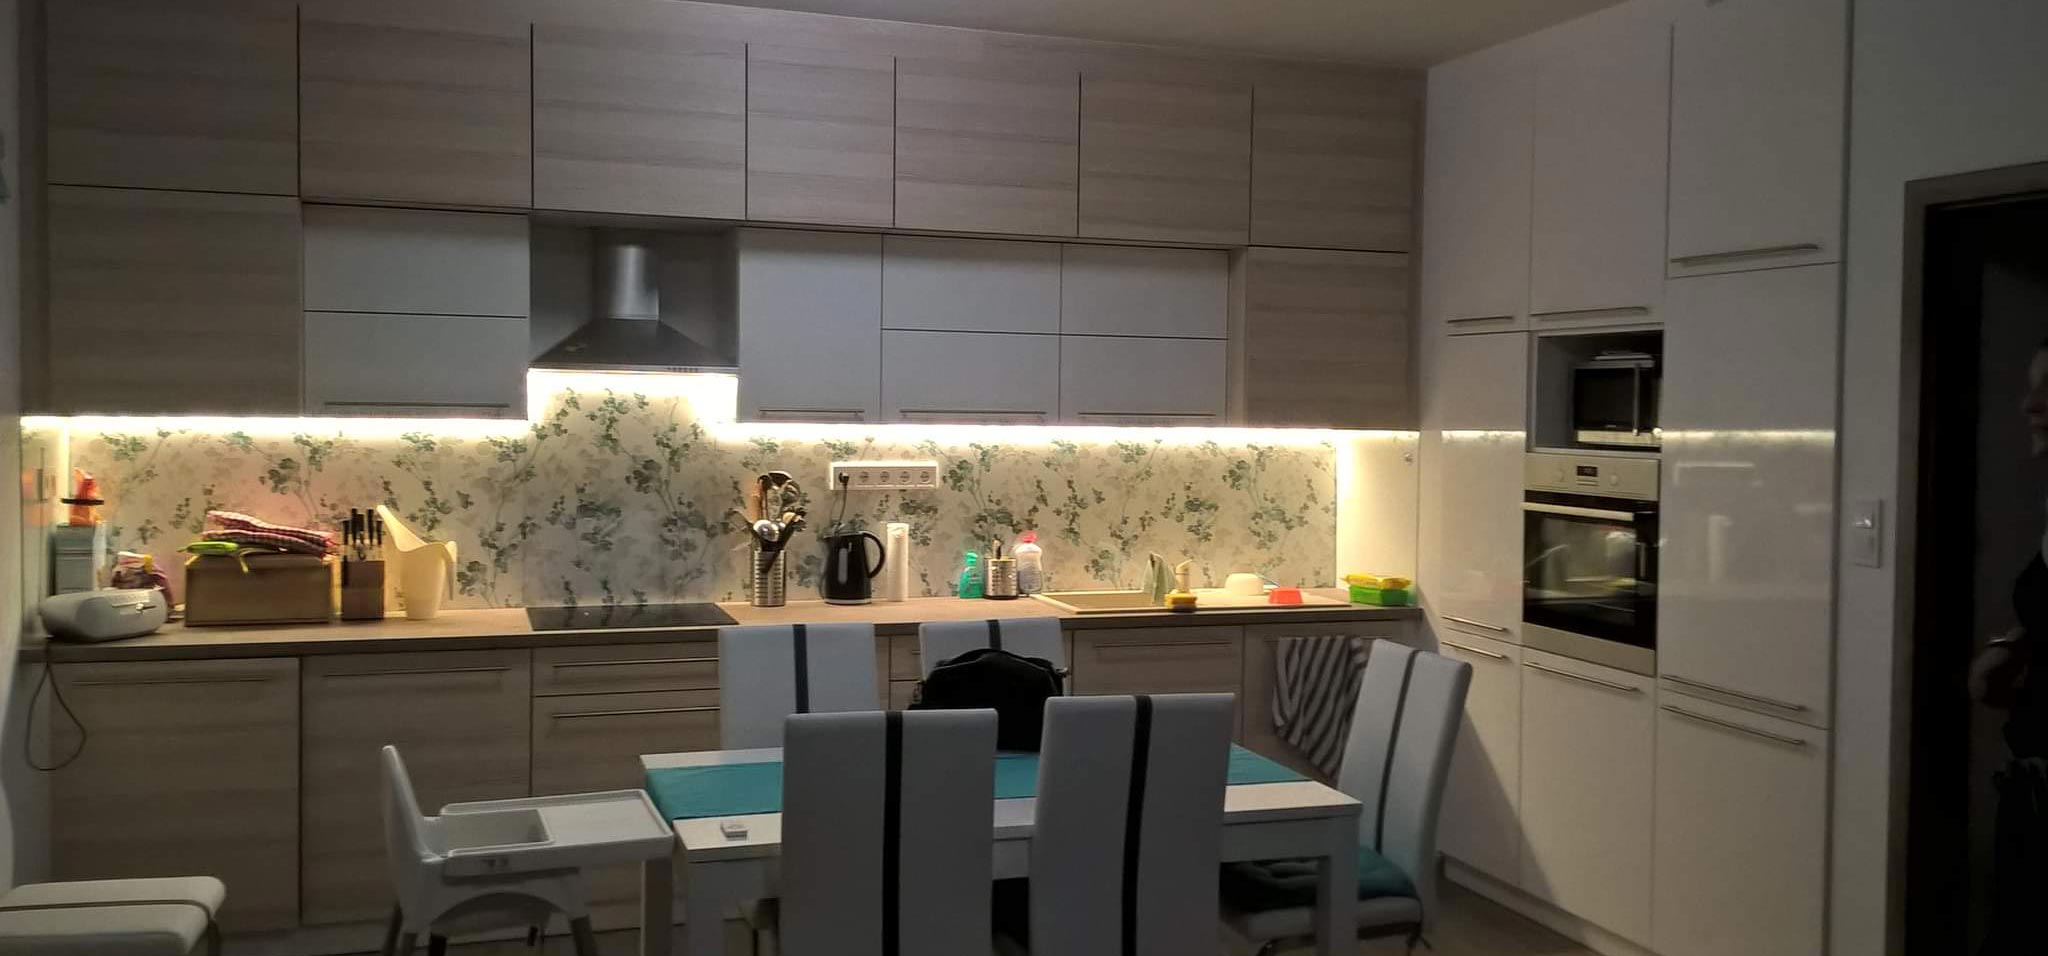 egyedi konyhabútor készítése Balaton bútorasztalos